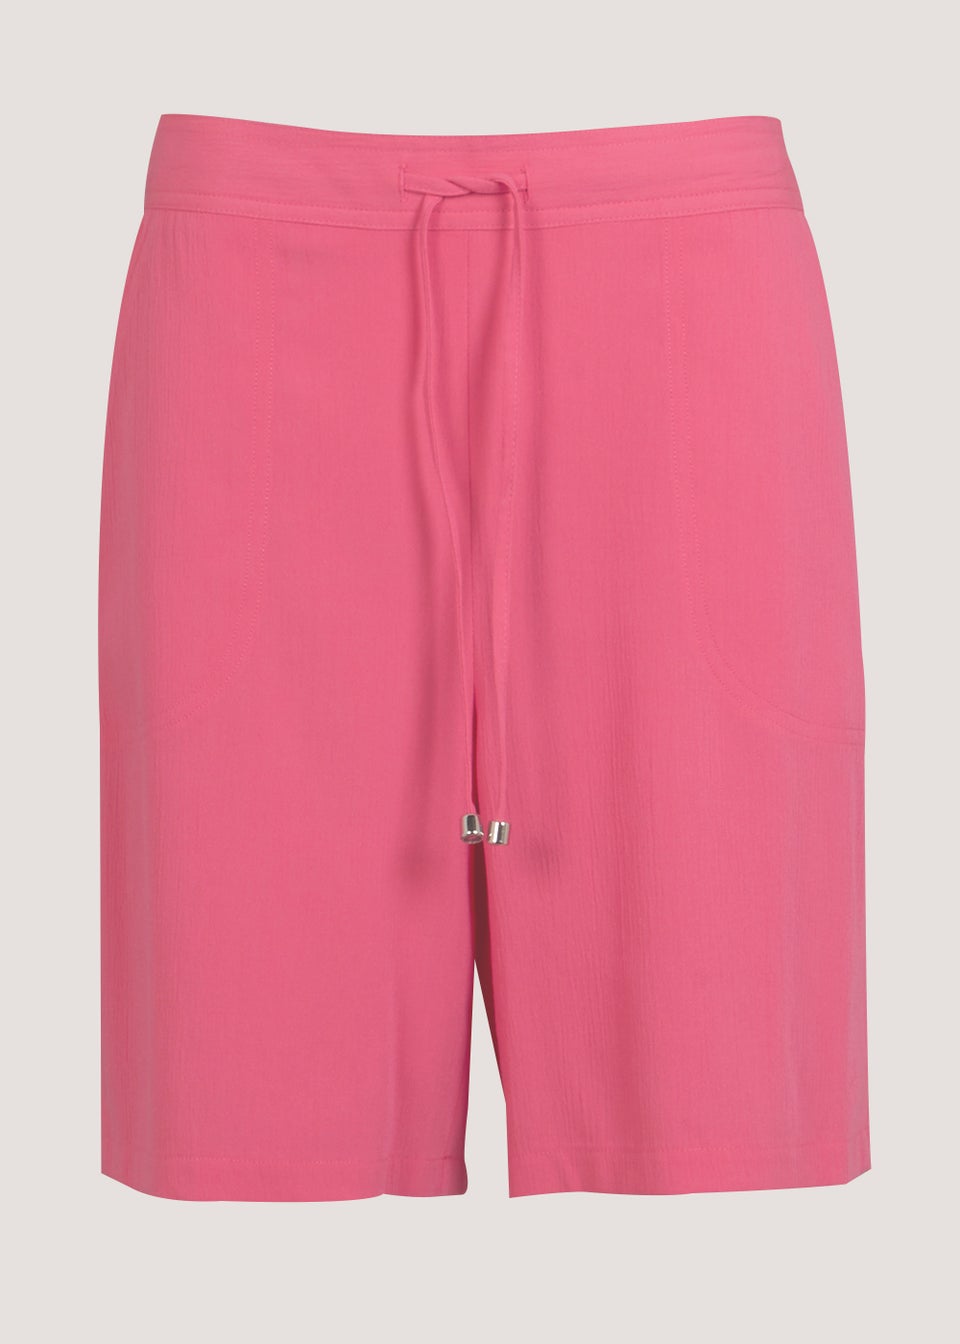 Pink Tie Waisted Shorts - Matalan